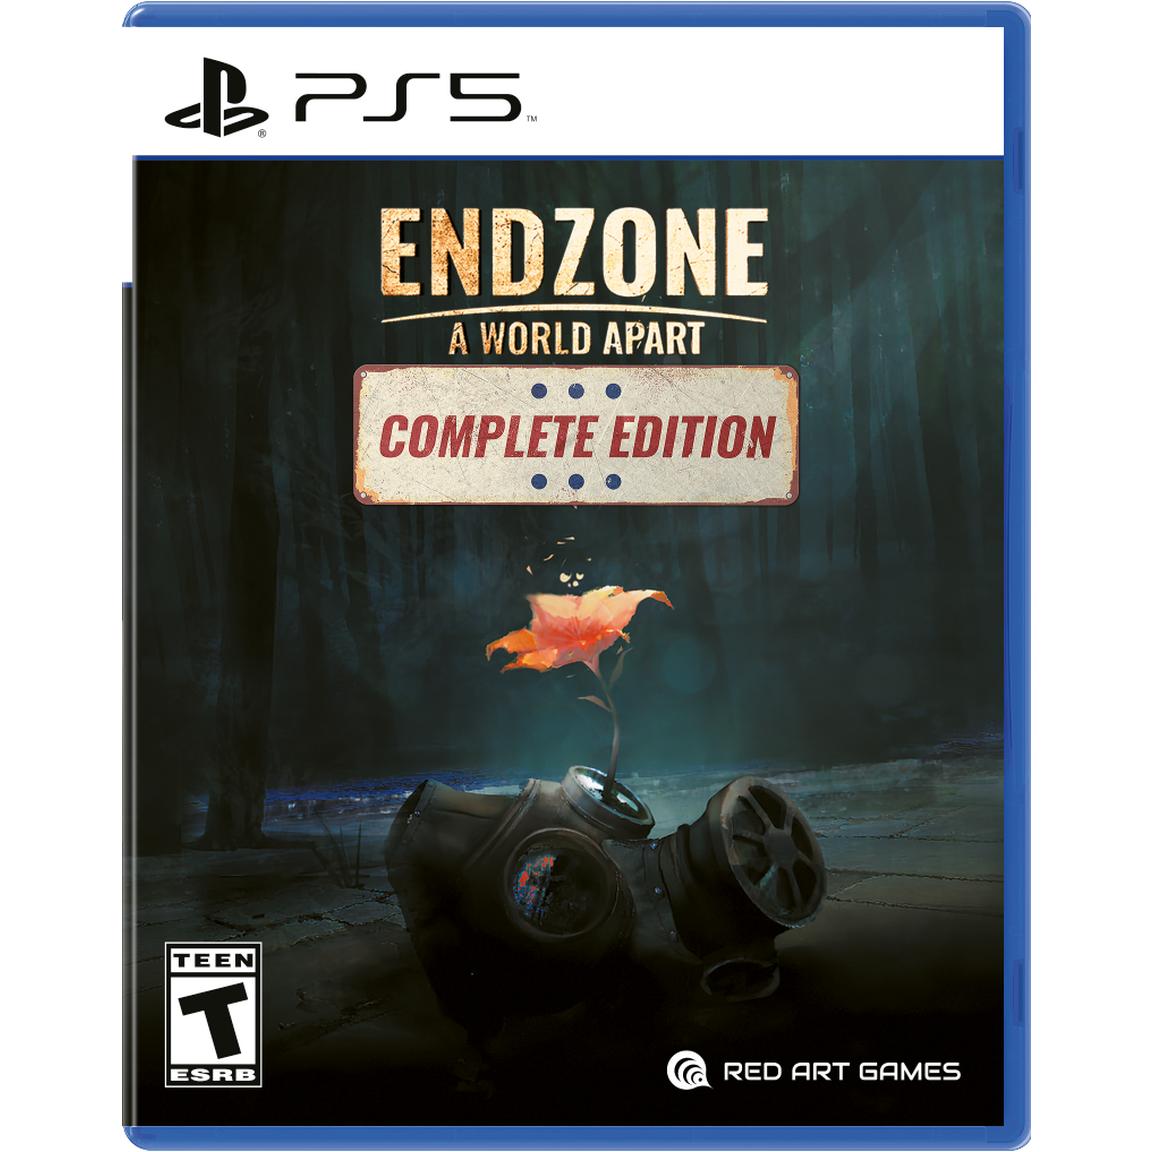 Видеоигра Endzone - A World Apart: Complete Edition - PlayStation 5 меркин в е подземные сооружения транспортного назначения